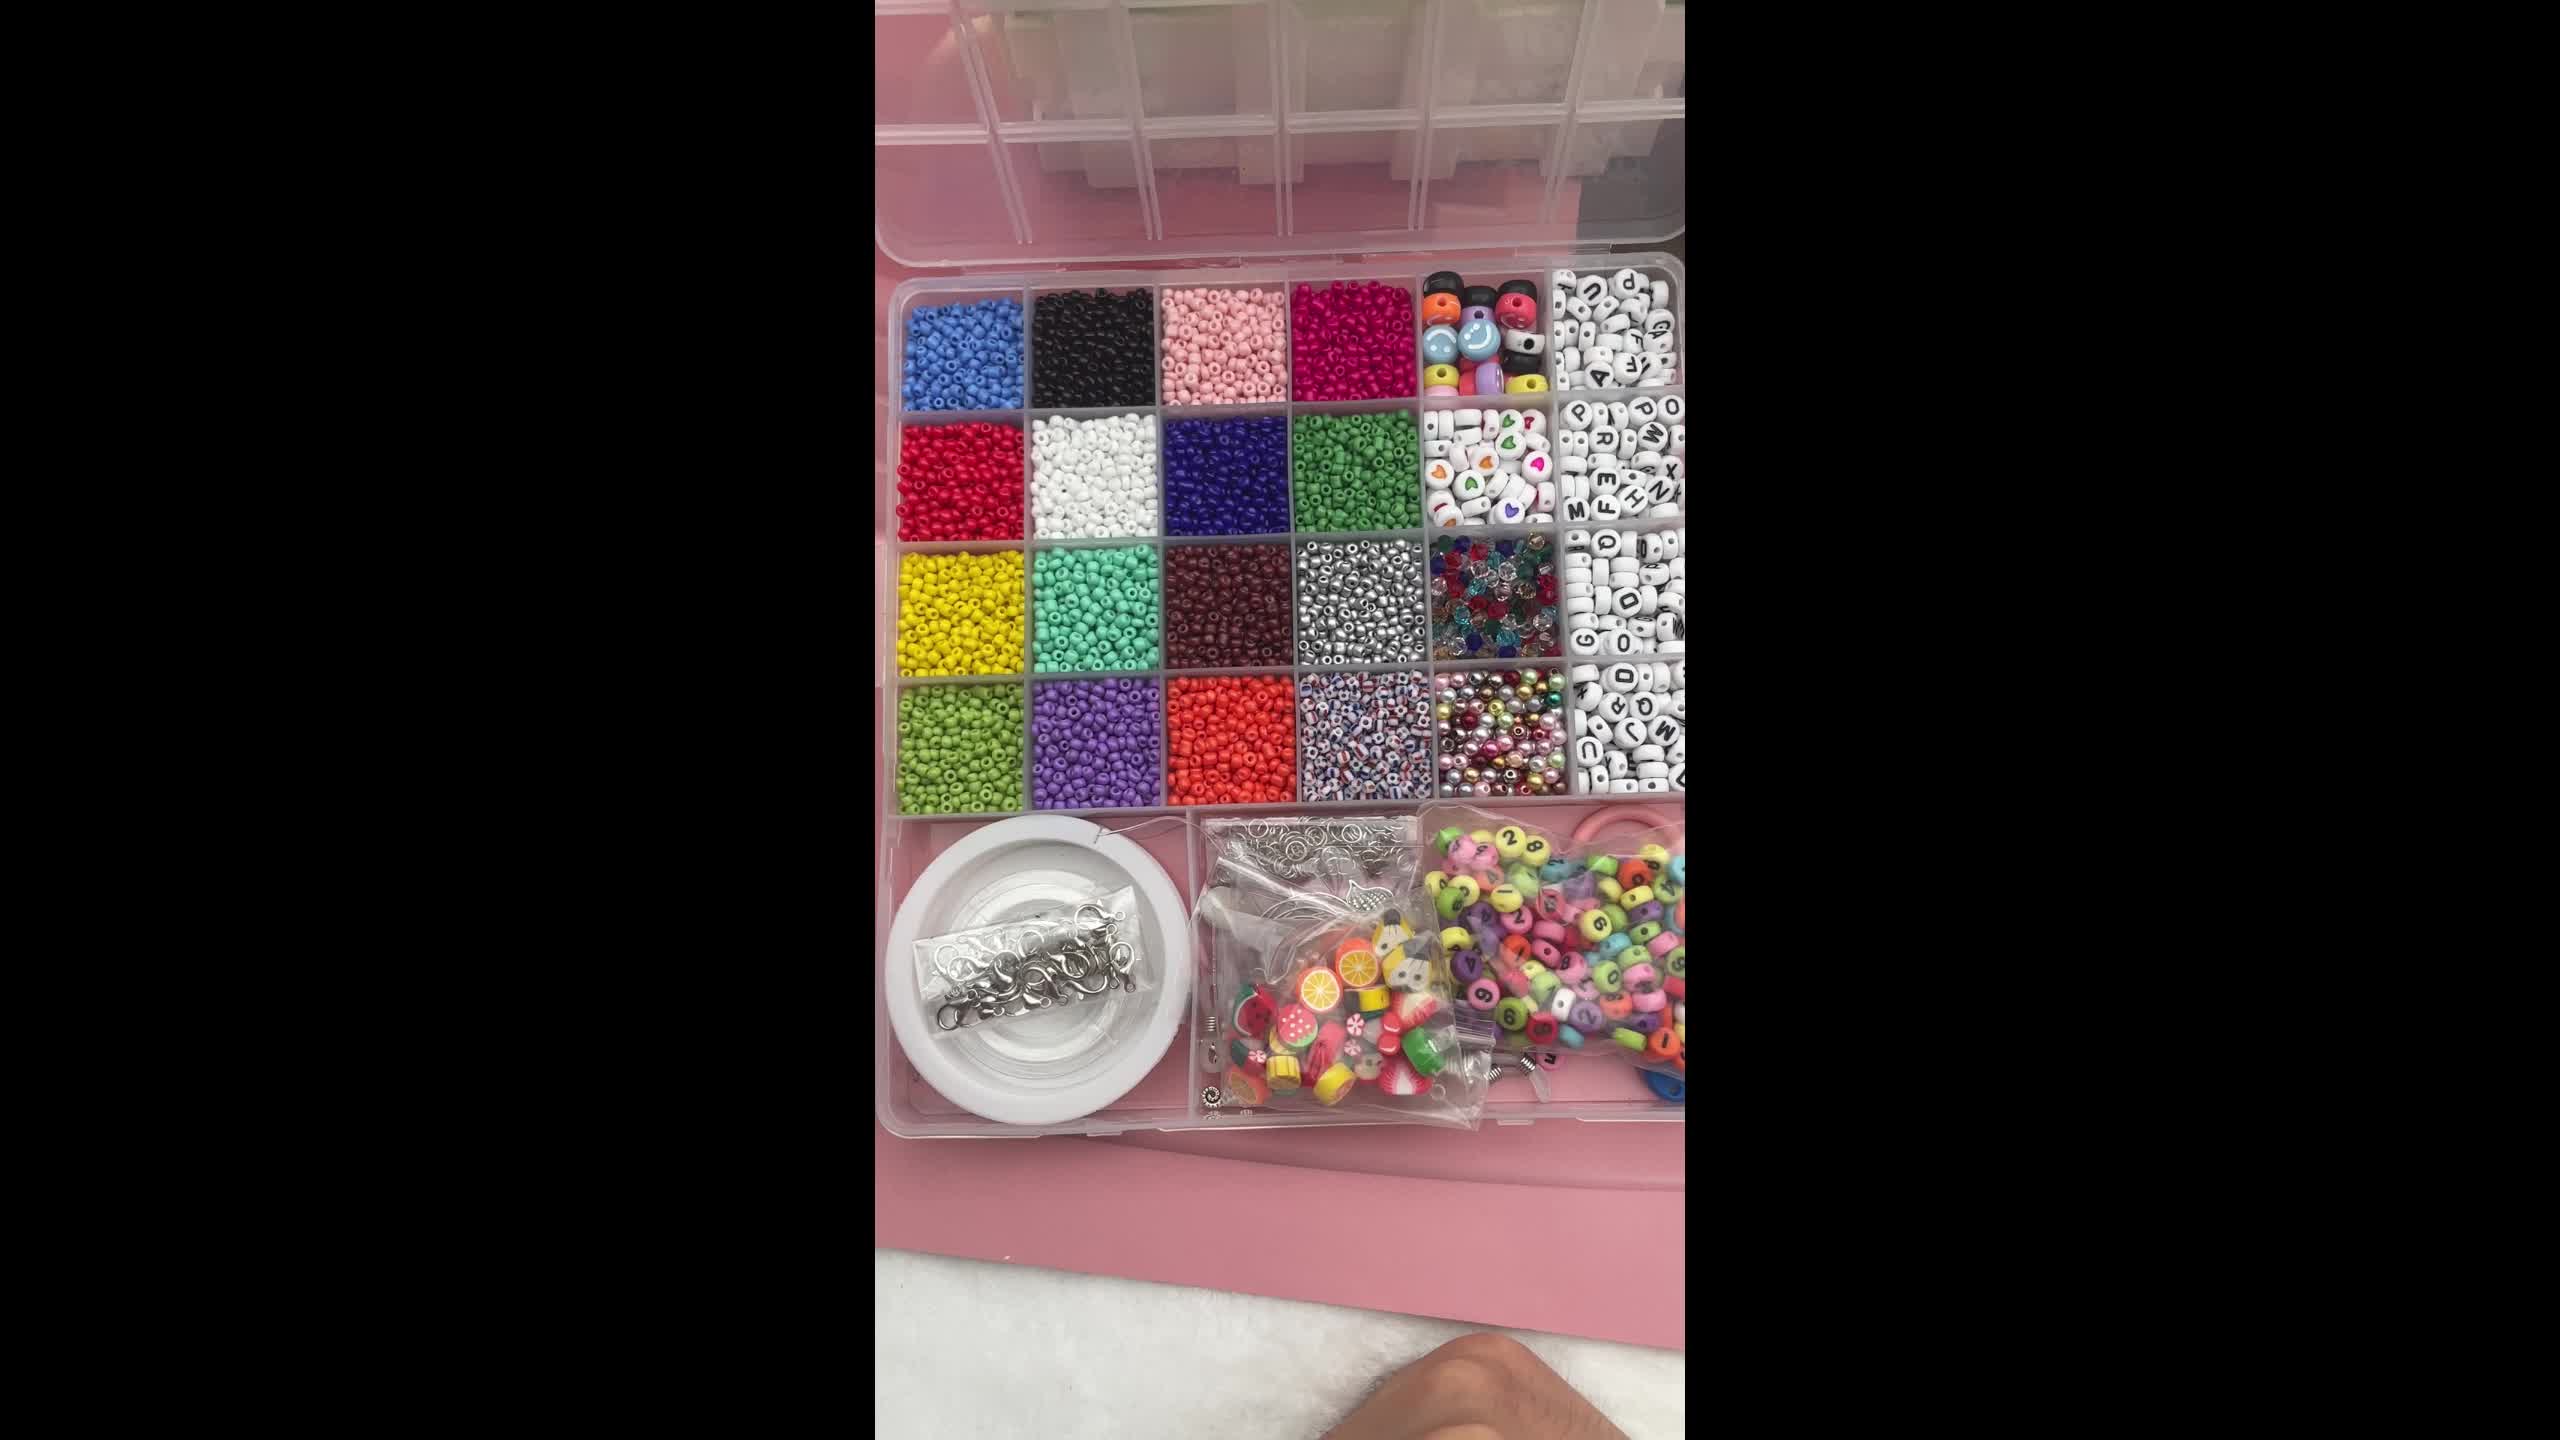 DIY Bracelet Letter Bead Kitarts & Crafts for Kids and 